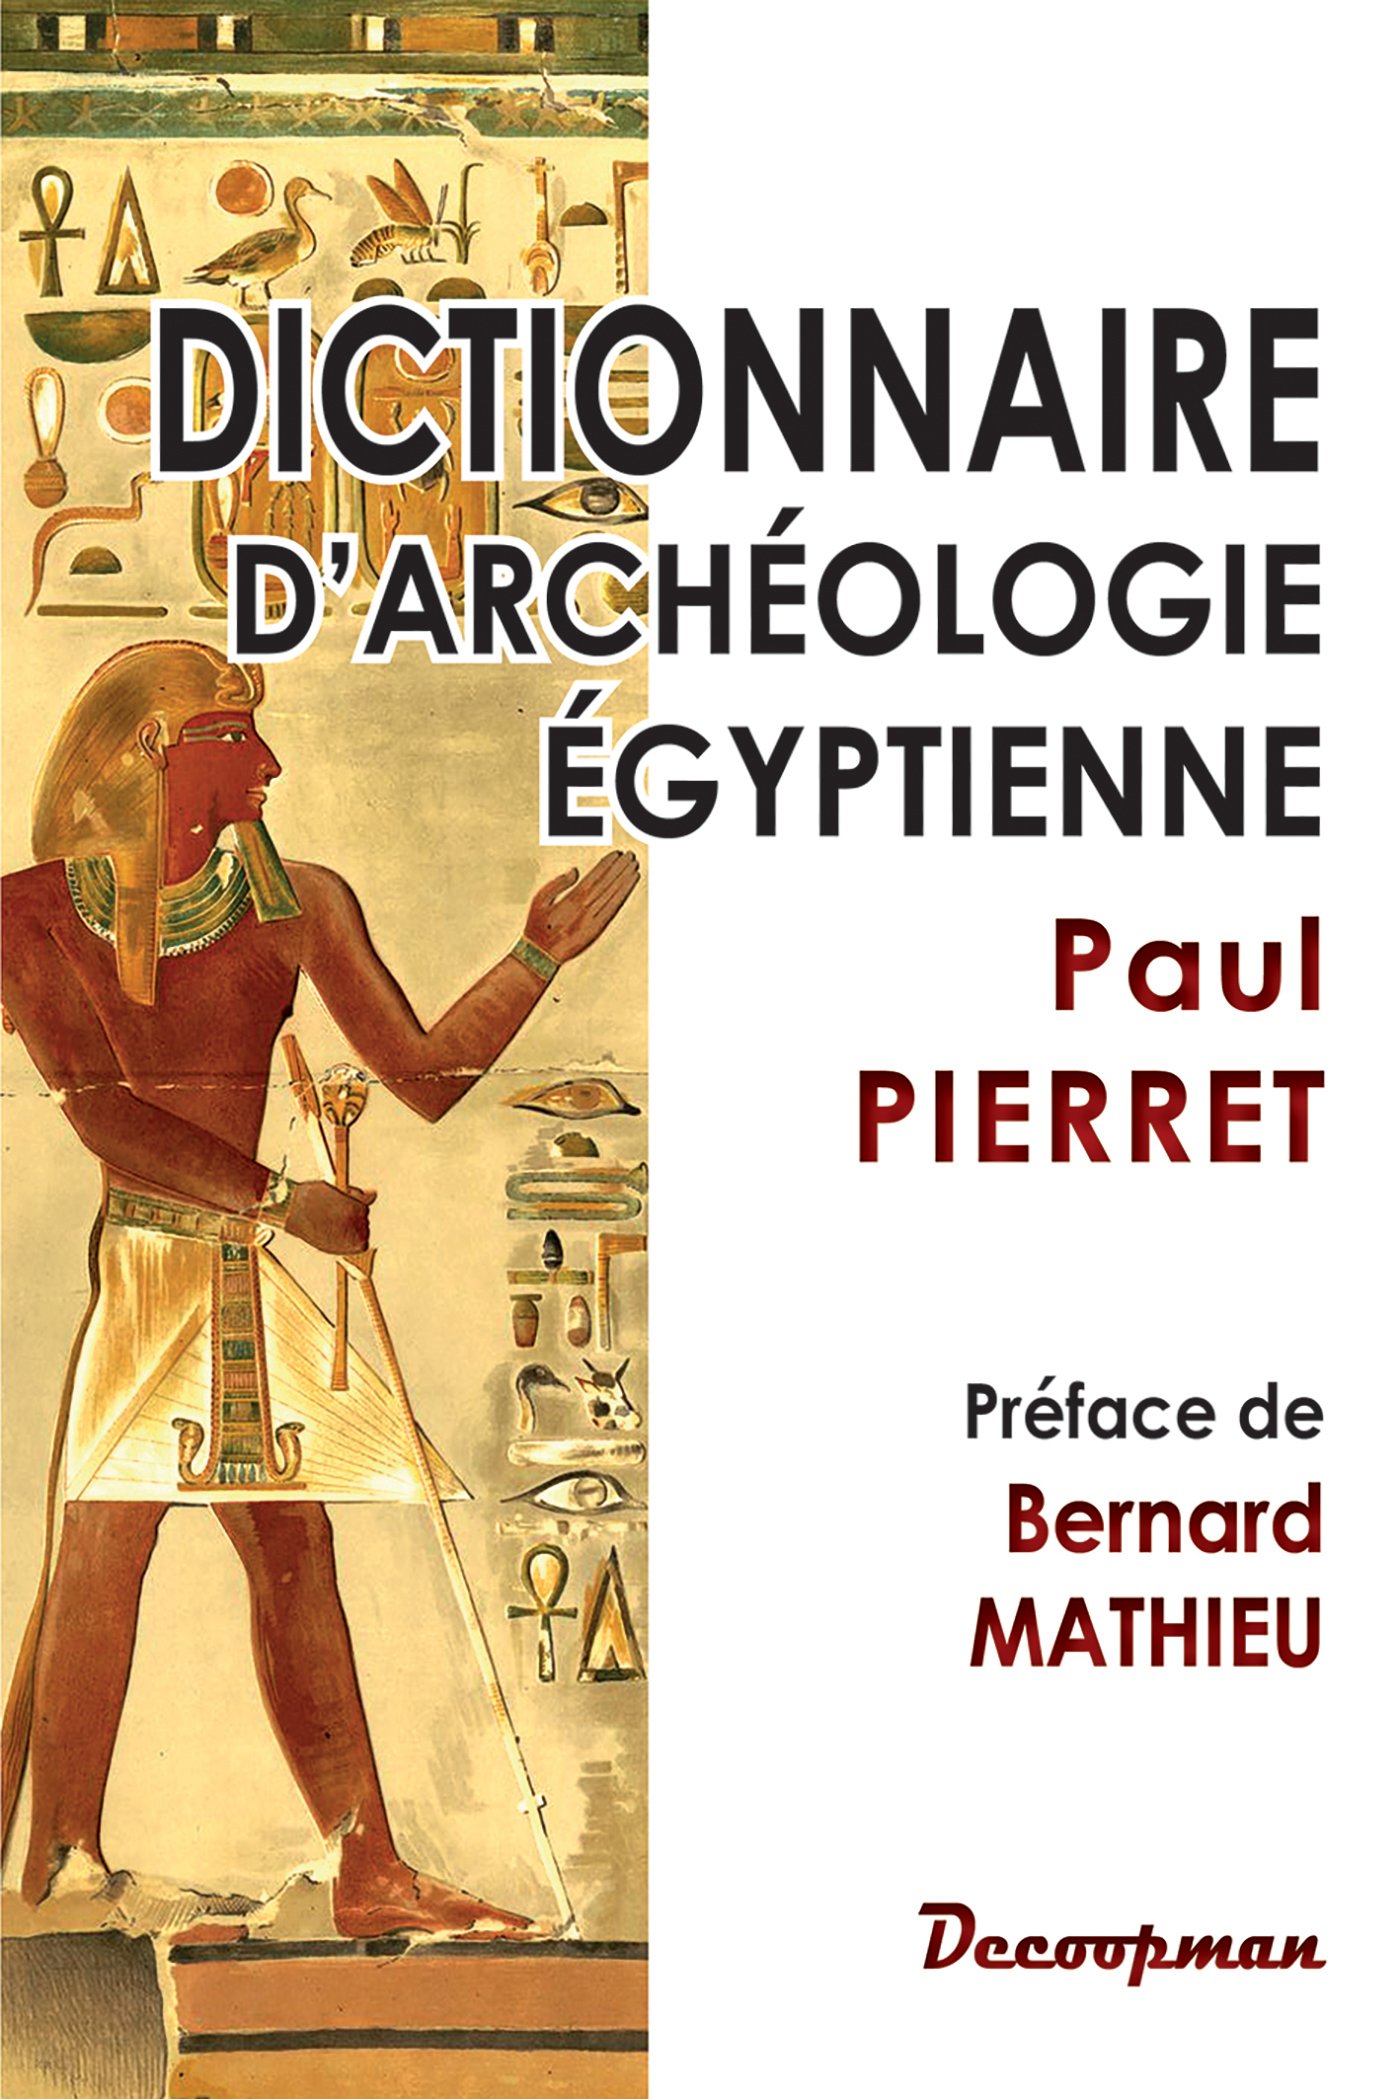 Dictionnaire d'archéologie égyptienne, 2016, 348 p.